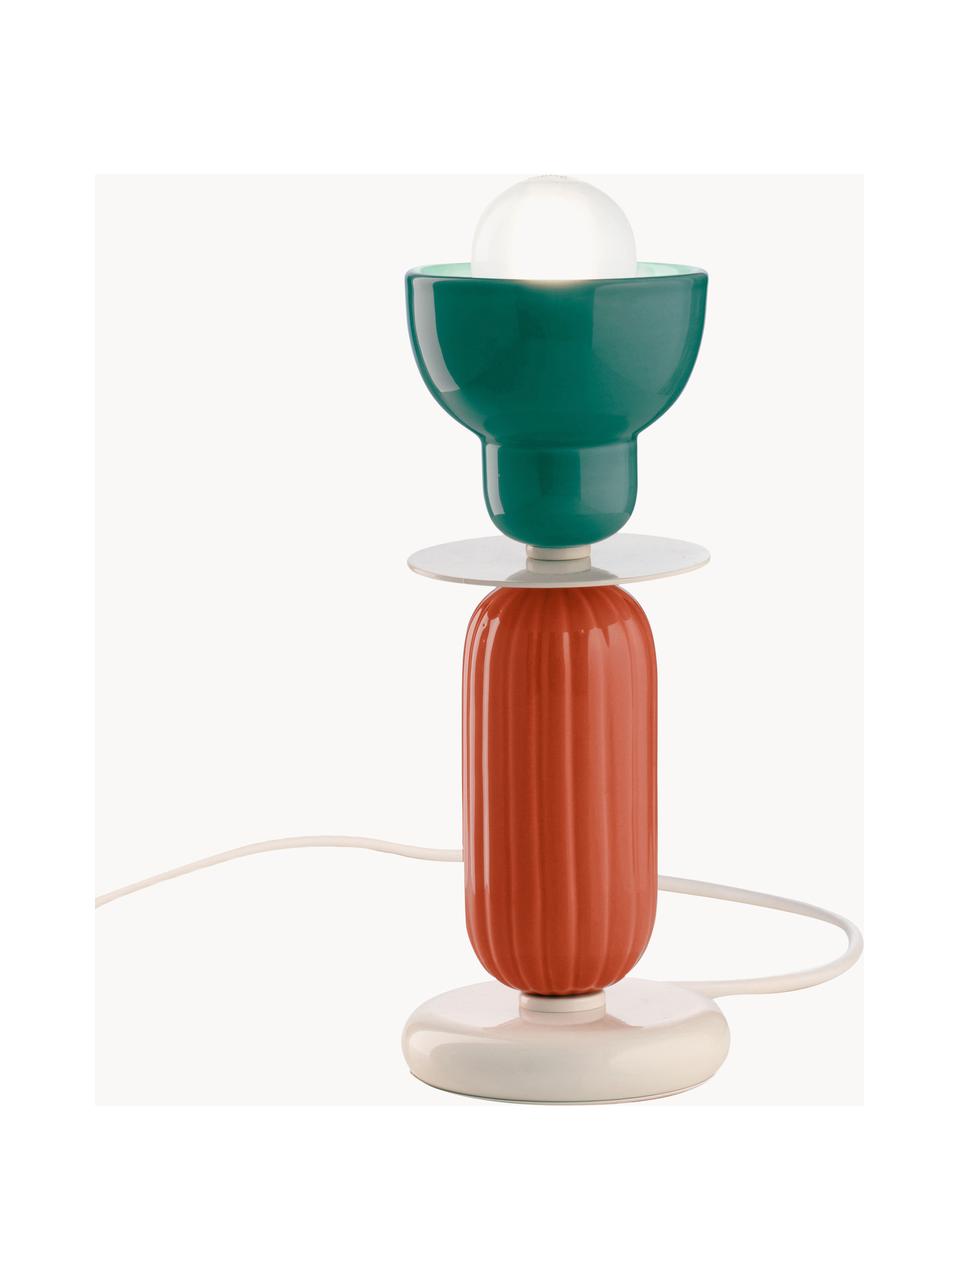 Malá stolní lampa Berimbau, ručně vyrobeno, Petrolejová, oranžová, tlumeně bílá, Ø 12 cm, V 30 cm